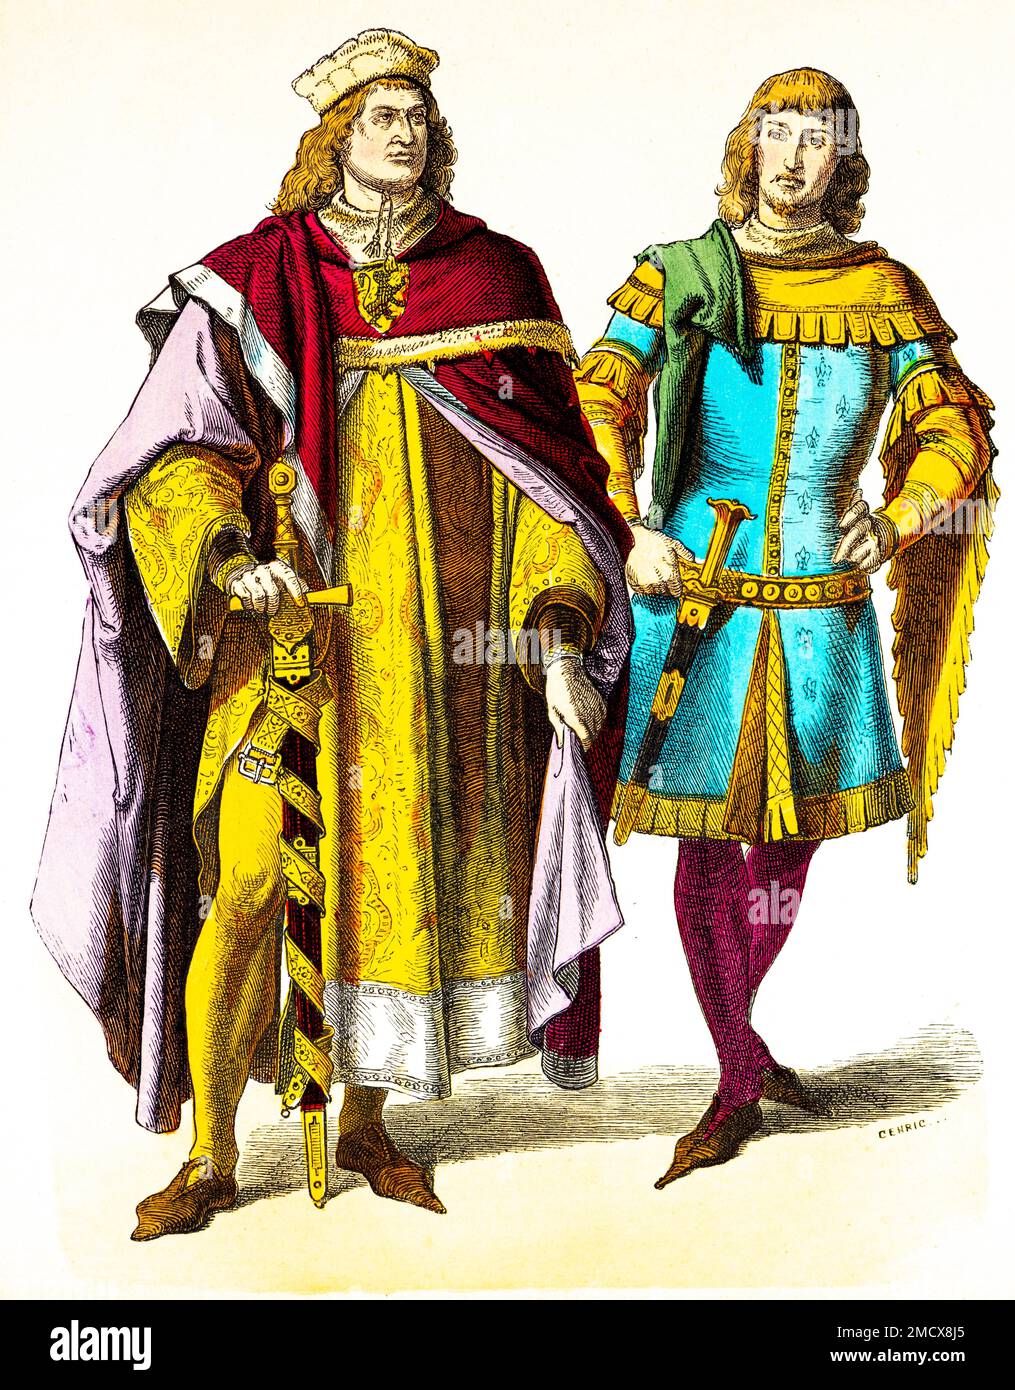 Muenchener Bilderbogen, costumes, 14th siècle, prince et chevalier, deux hommes, aristocratie, blason, épées, robes longues, mode, élégant Banque D'Images